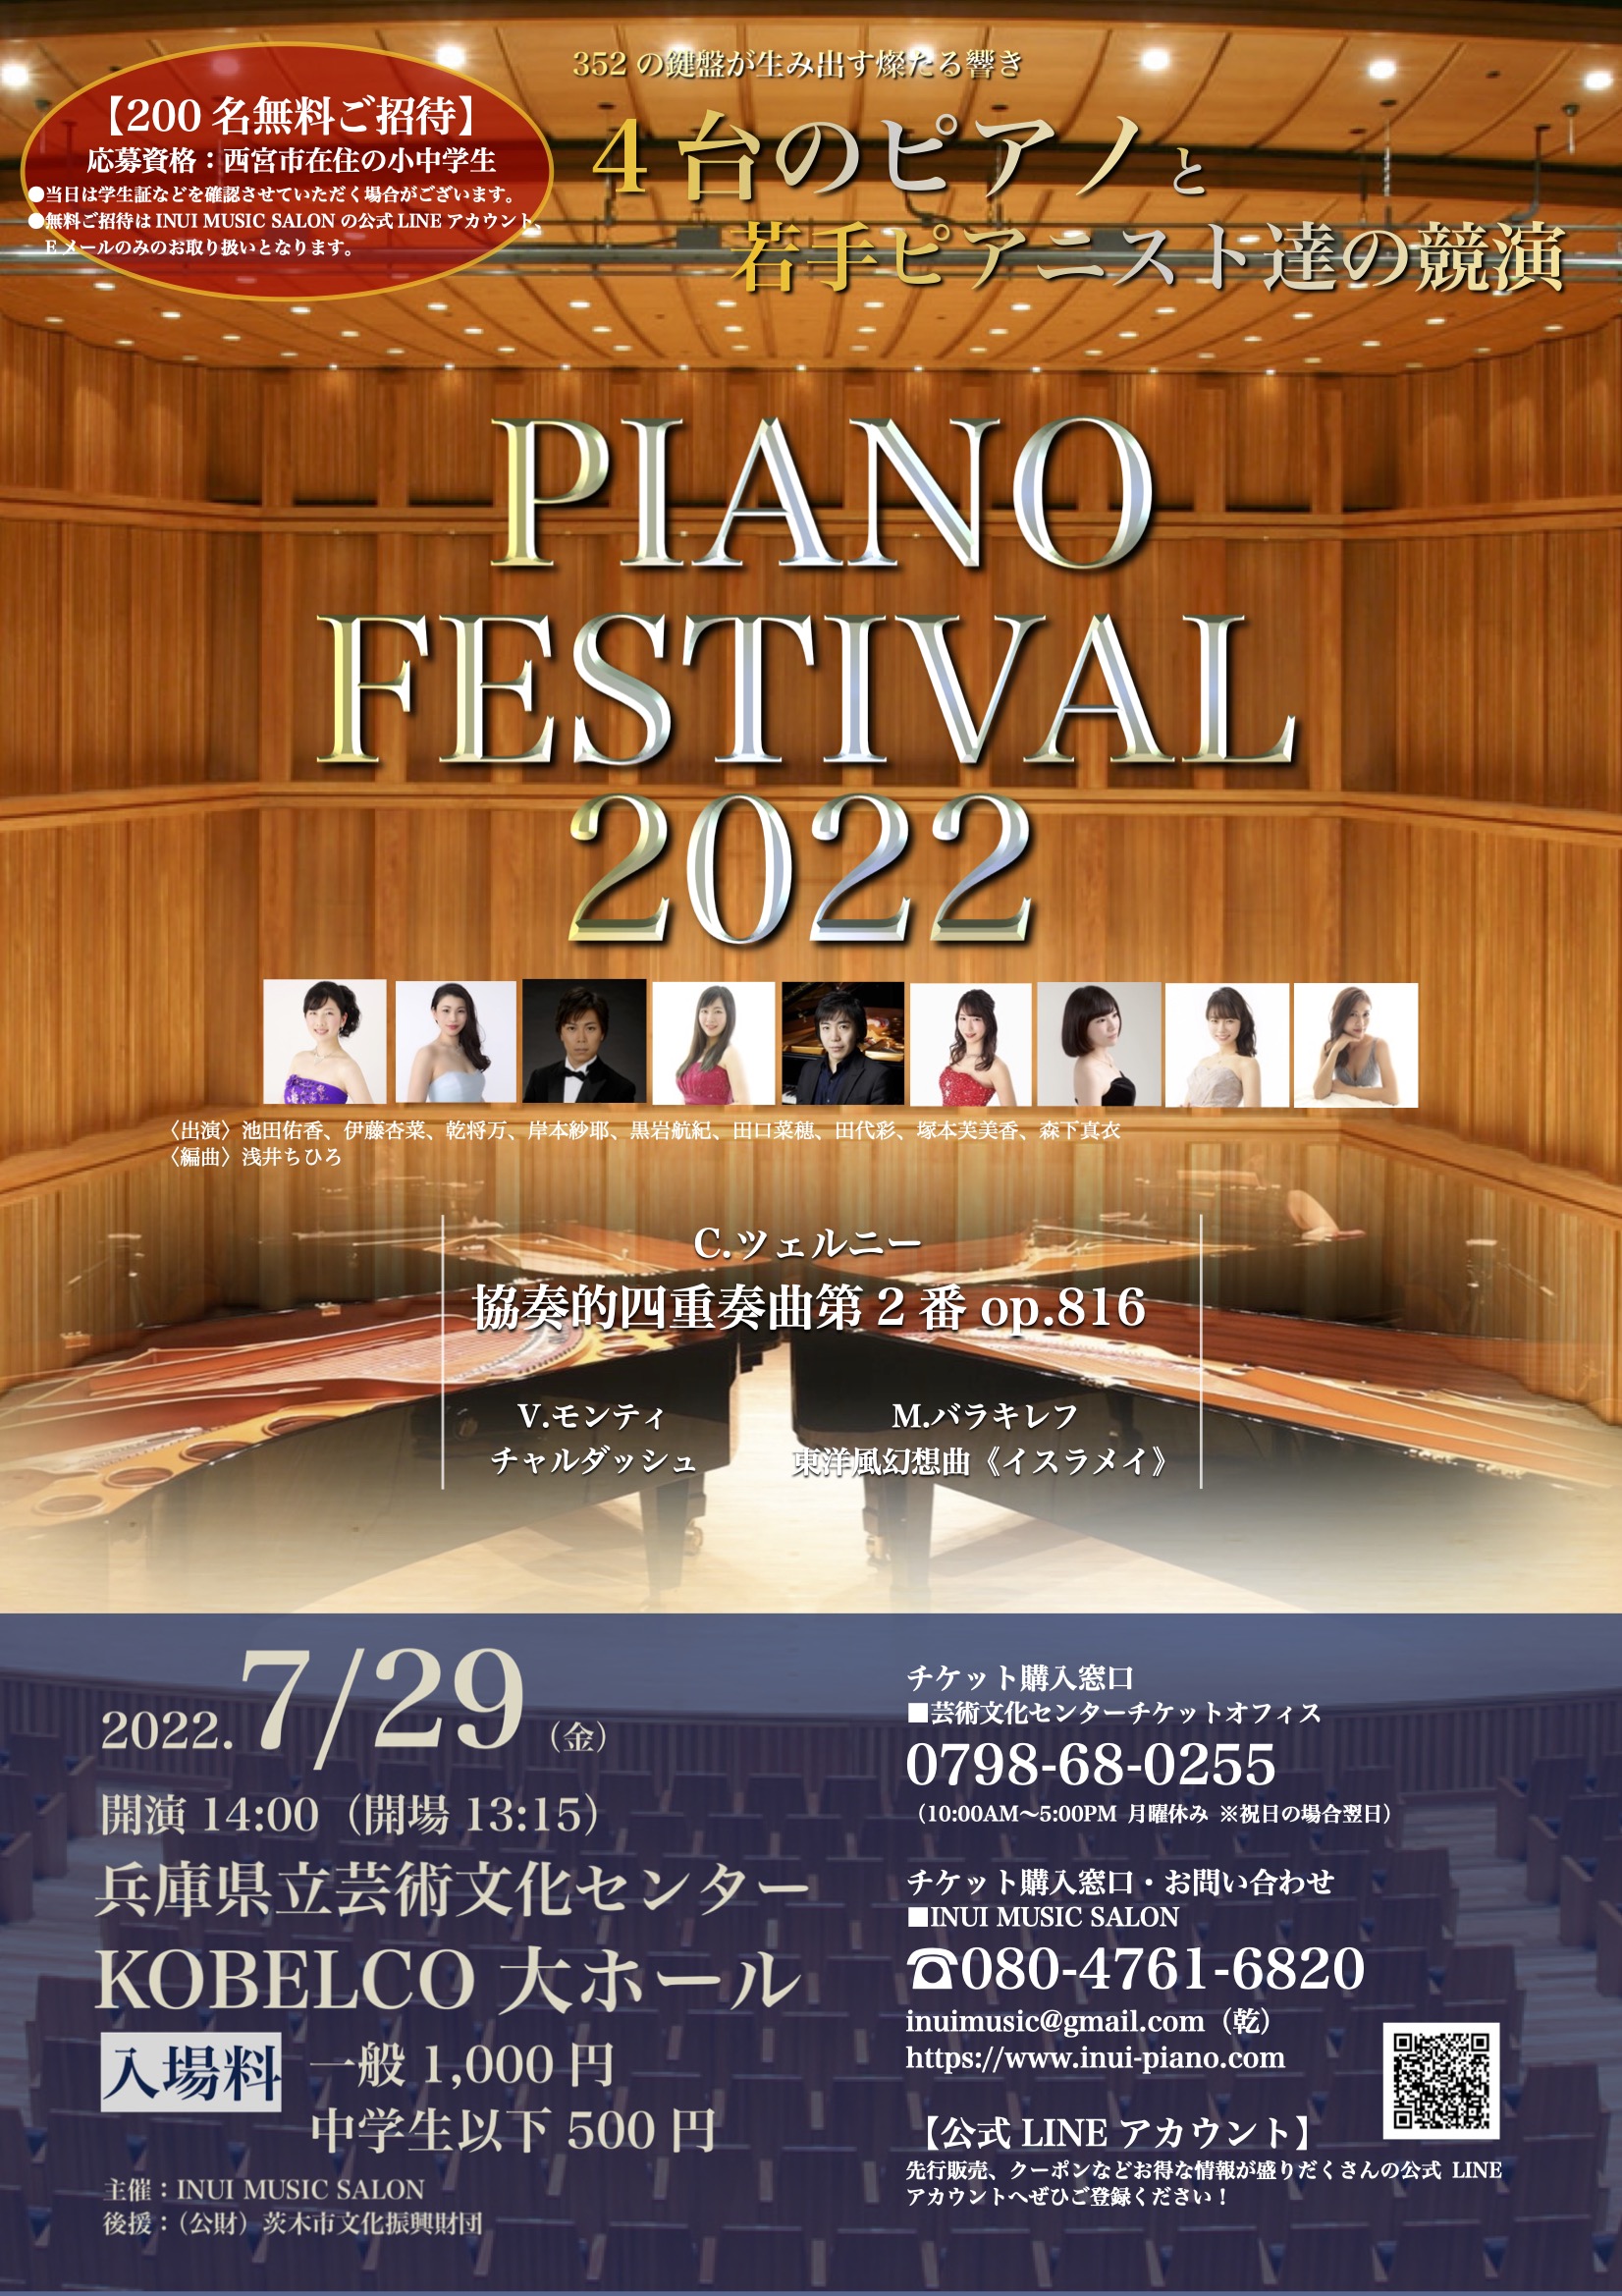 PIANO FESTIVAL 2022